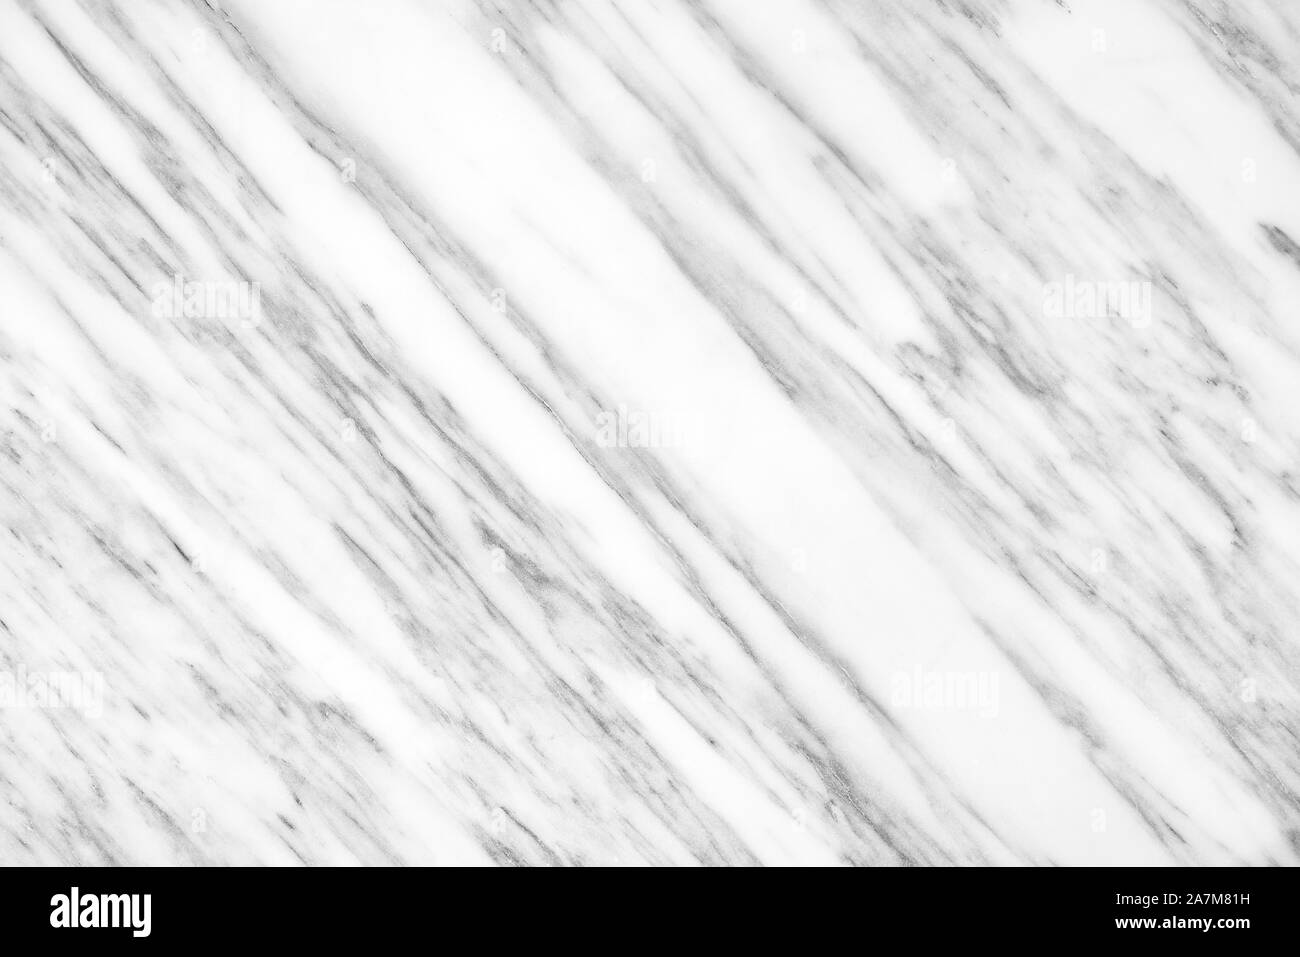 Weißen Carrara-Marmor Tageslicht für Bad oder Küche weiße Arbeitsplatte. Hochauflösende Texturen und Muster. Stockfoto